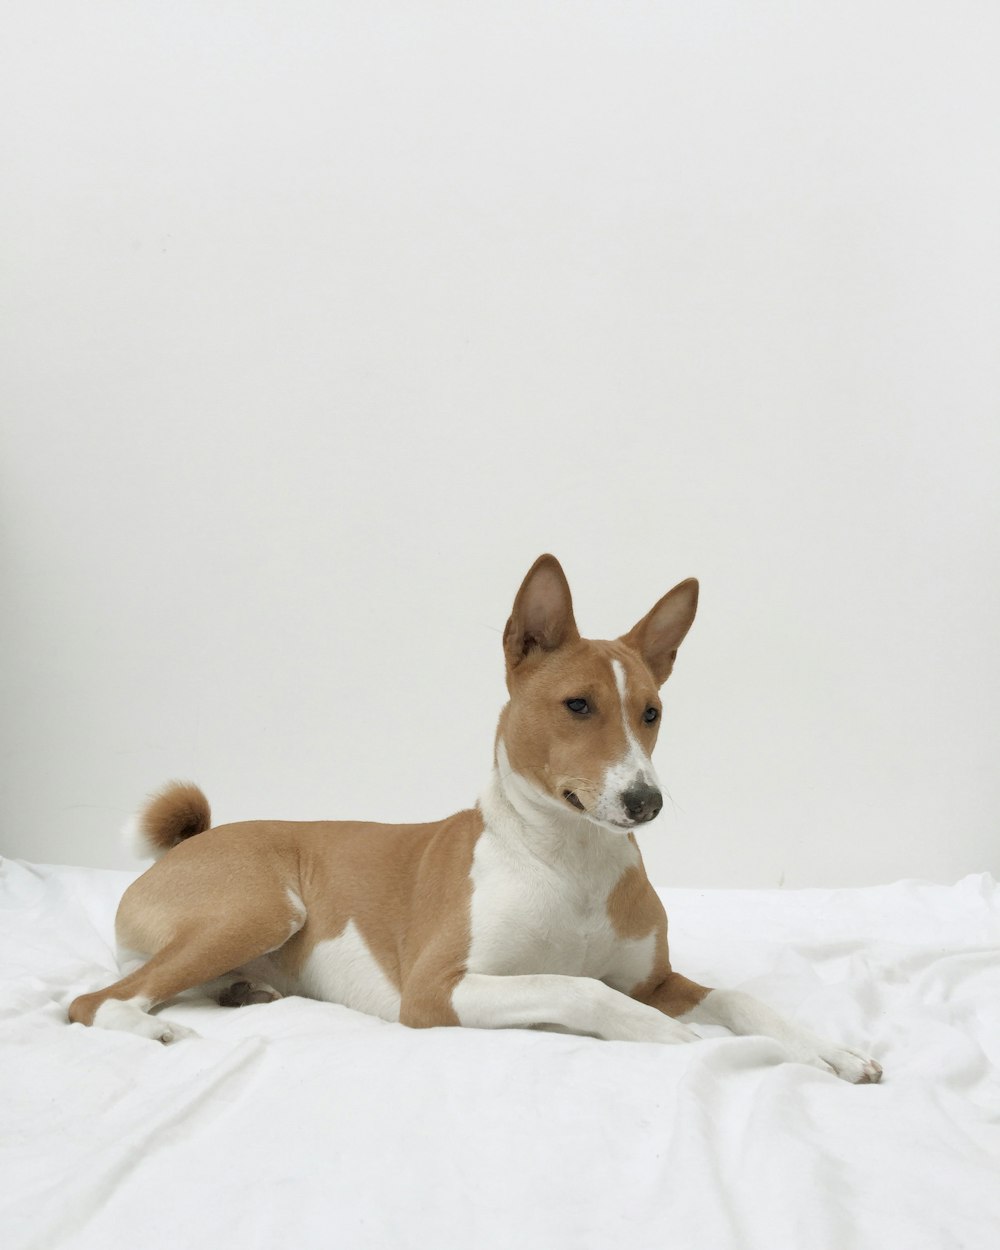 Um cão marrom e branco sentado em um cobertor branco.